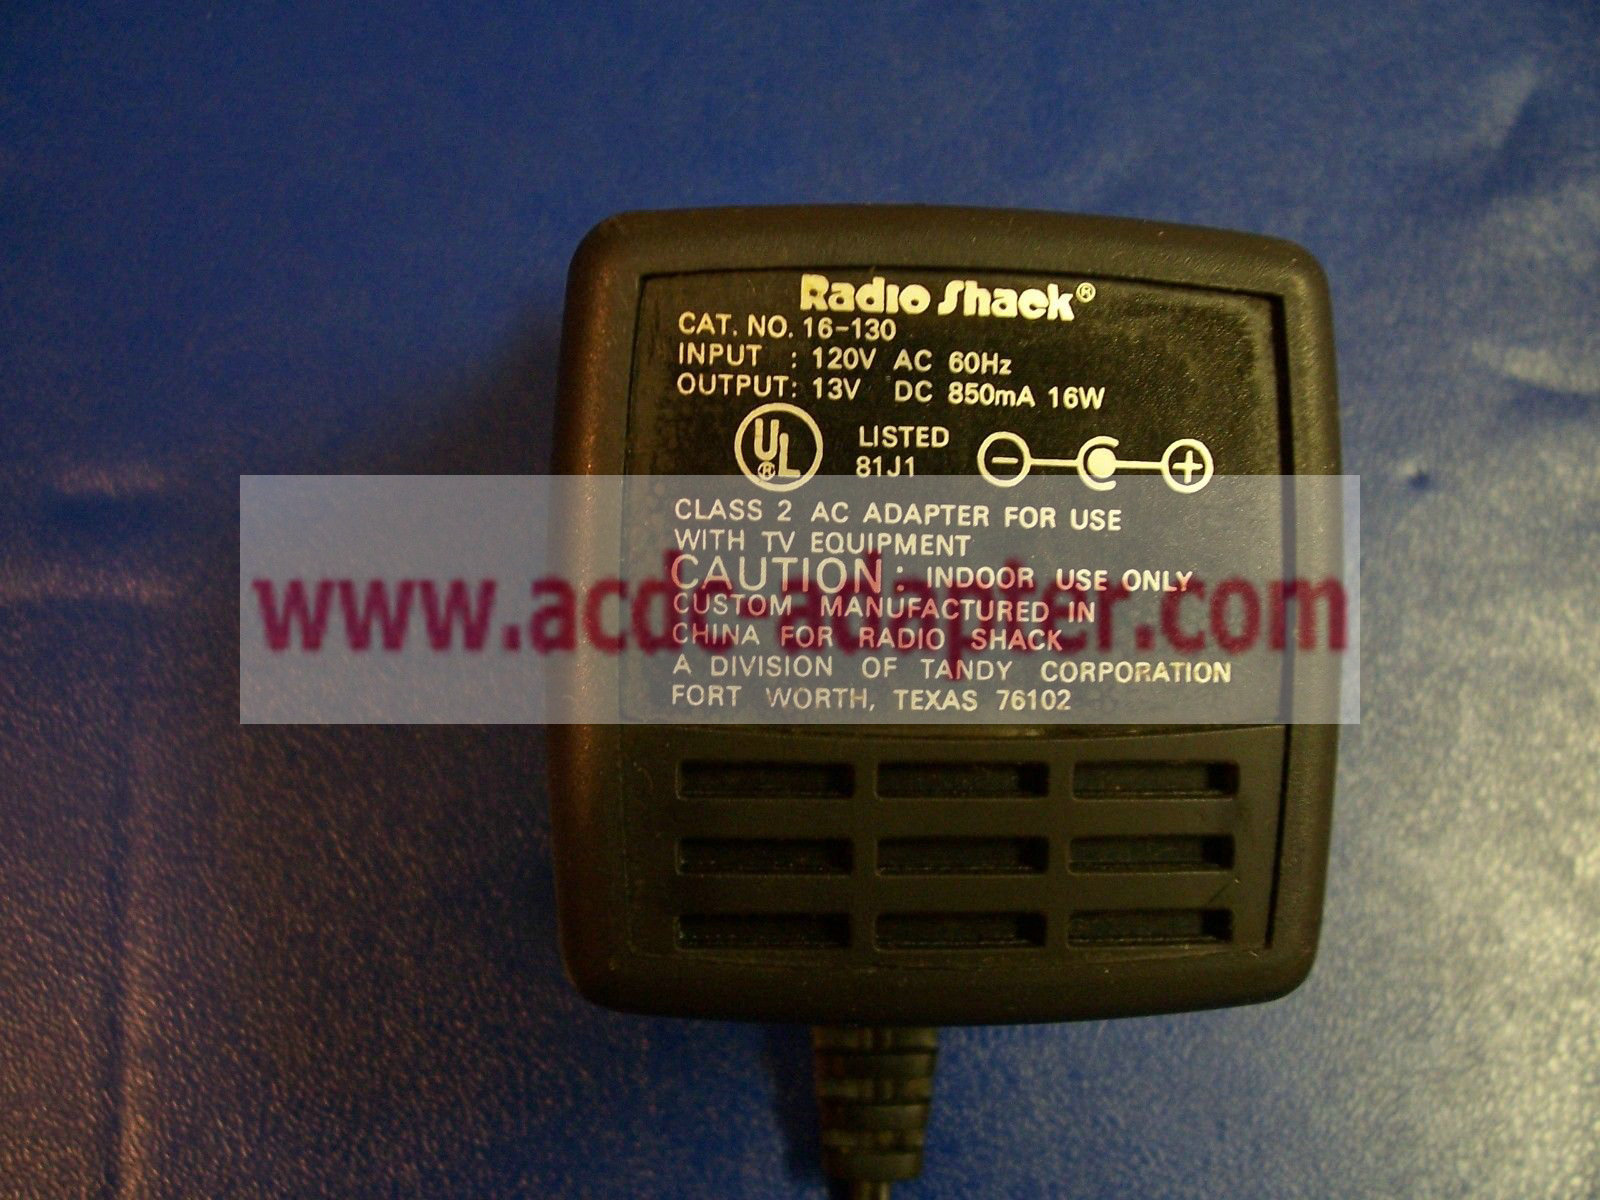 Genuine 13V 850mA Radio Shack 16-130 AC Power Adapter - Click Image to Close